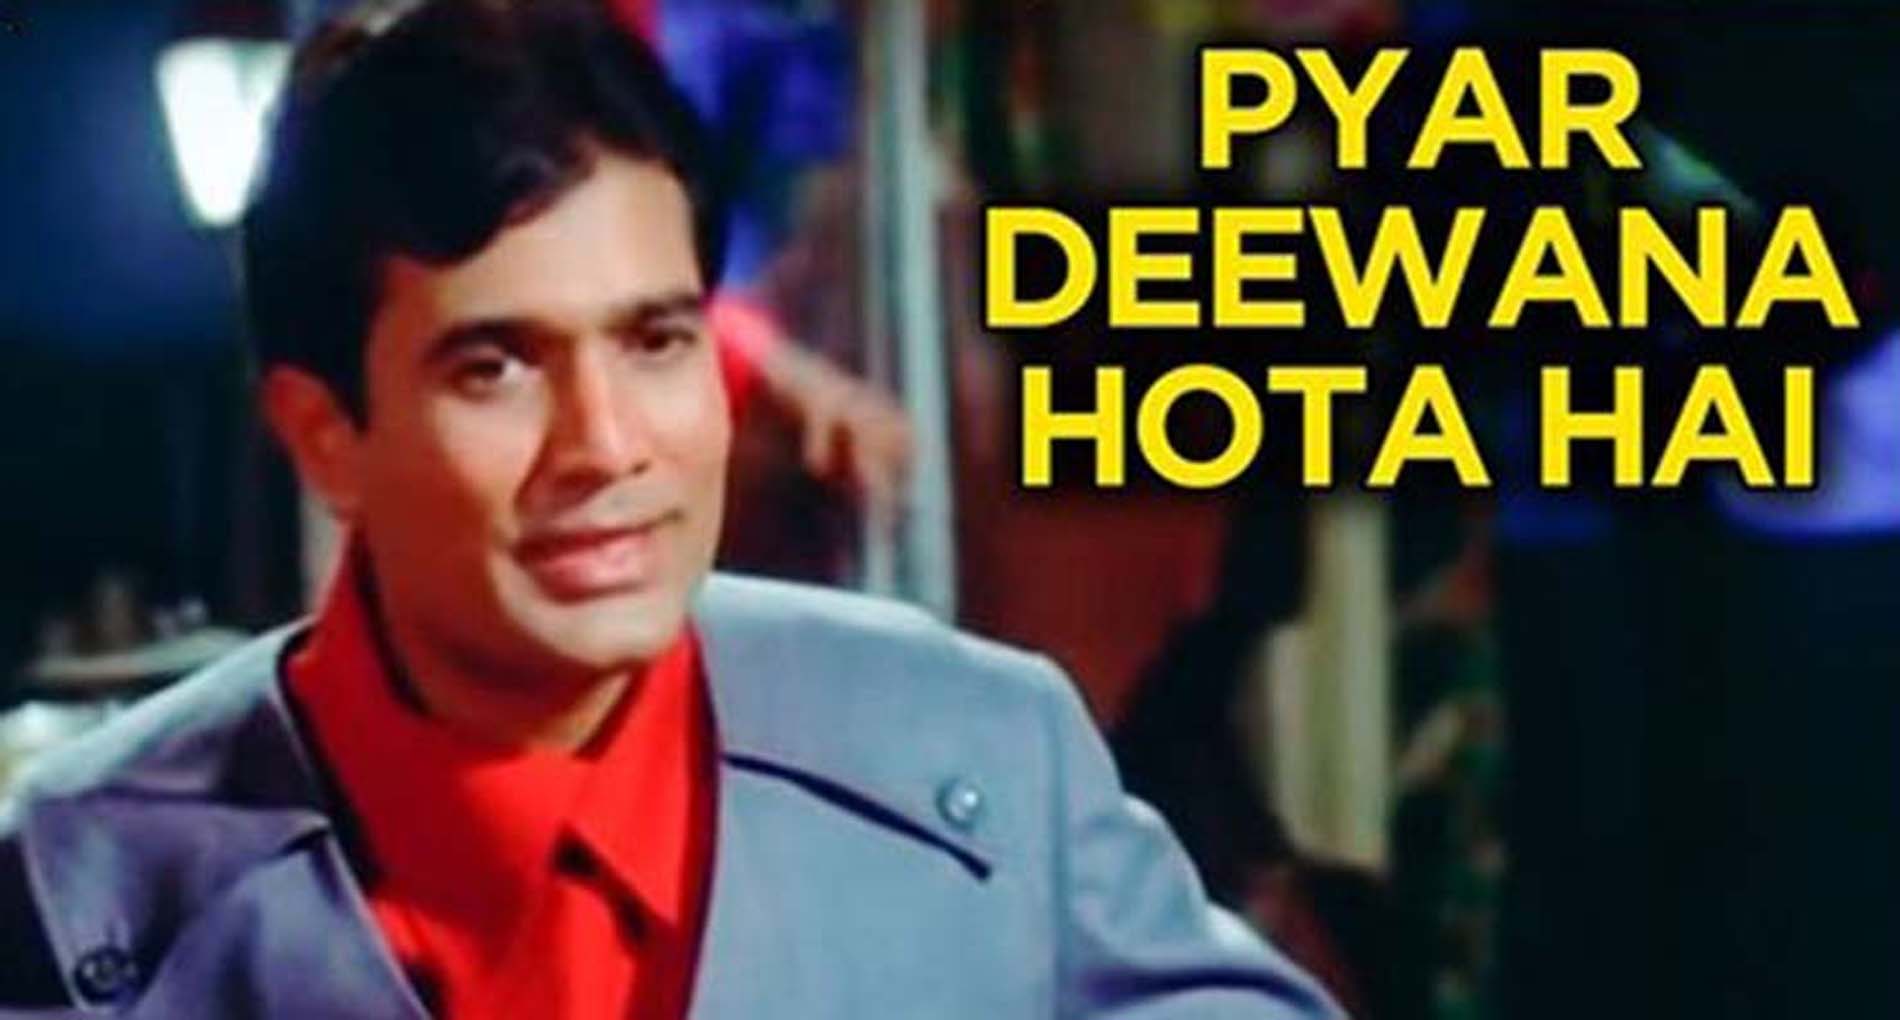 Pyar Deewana Hota Hai Lyrics in Hindi, प्यार दीवाना होता है– Kishor kumar